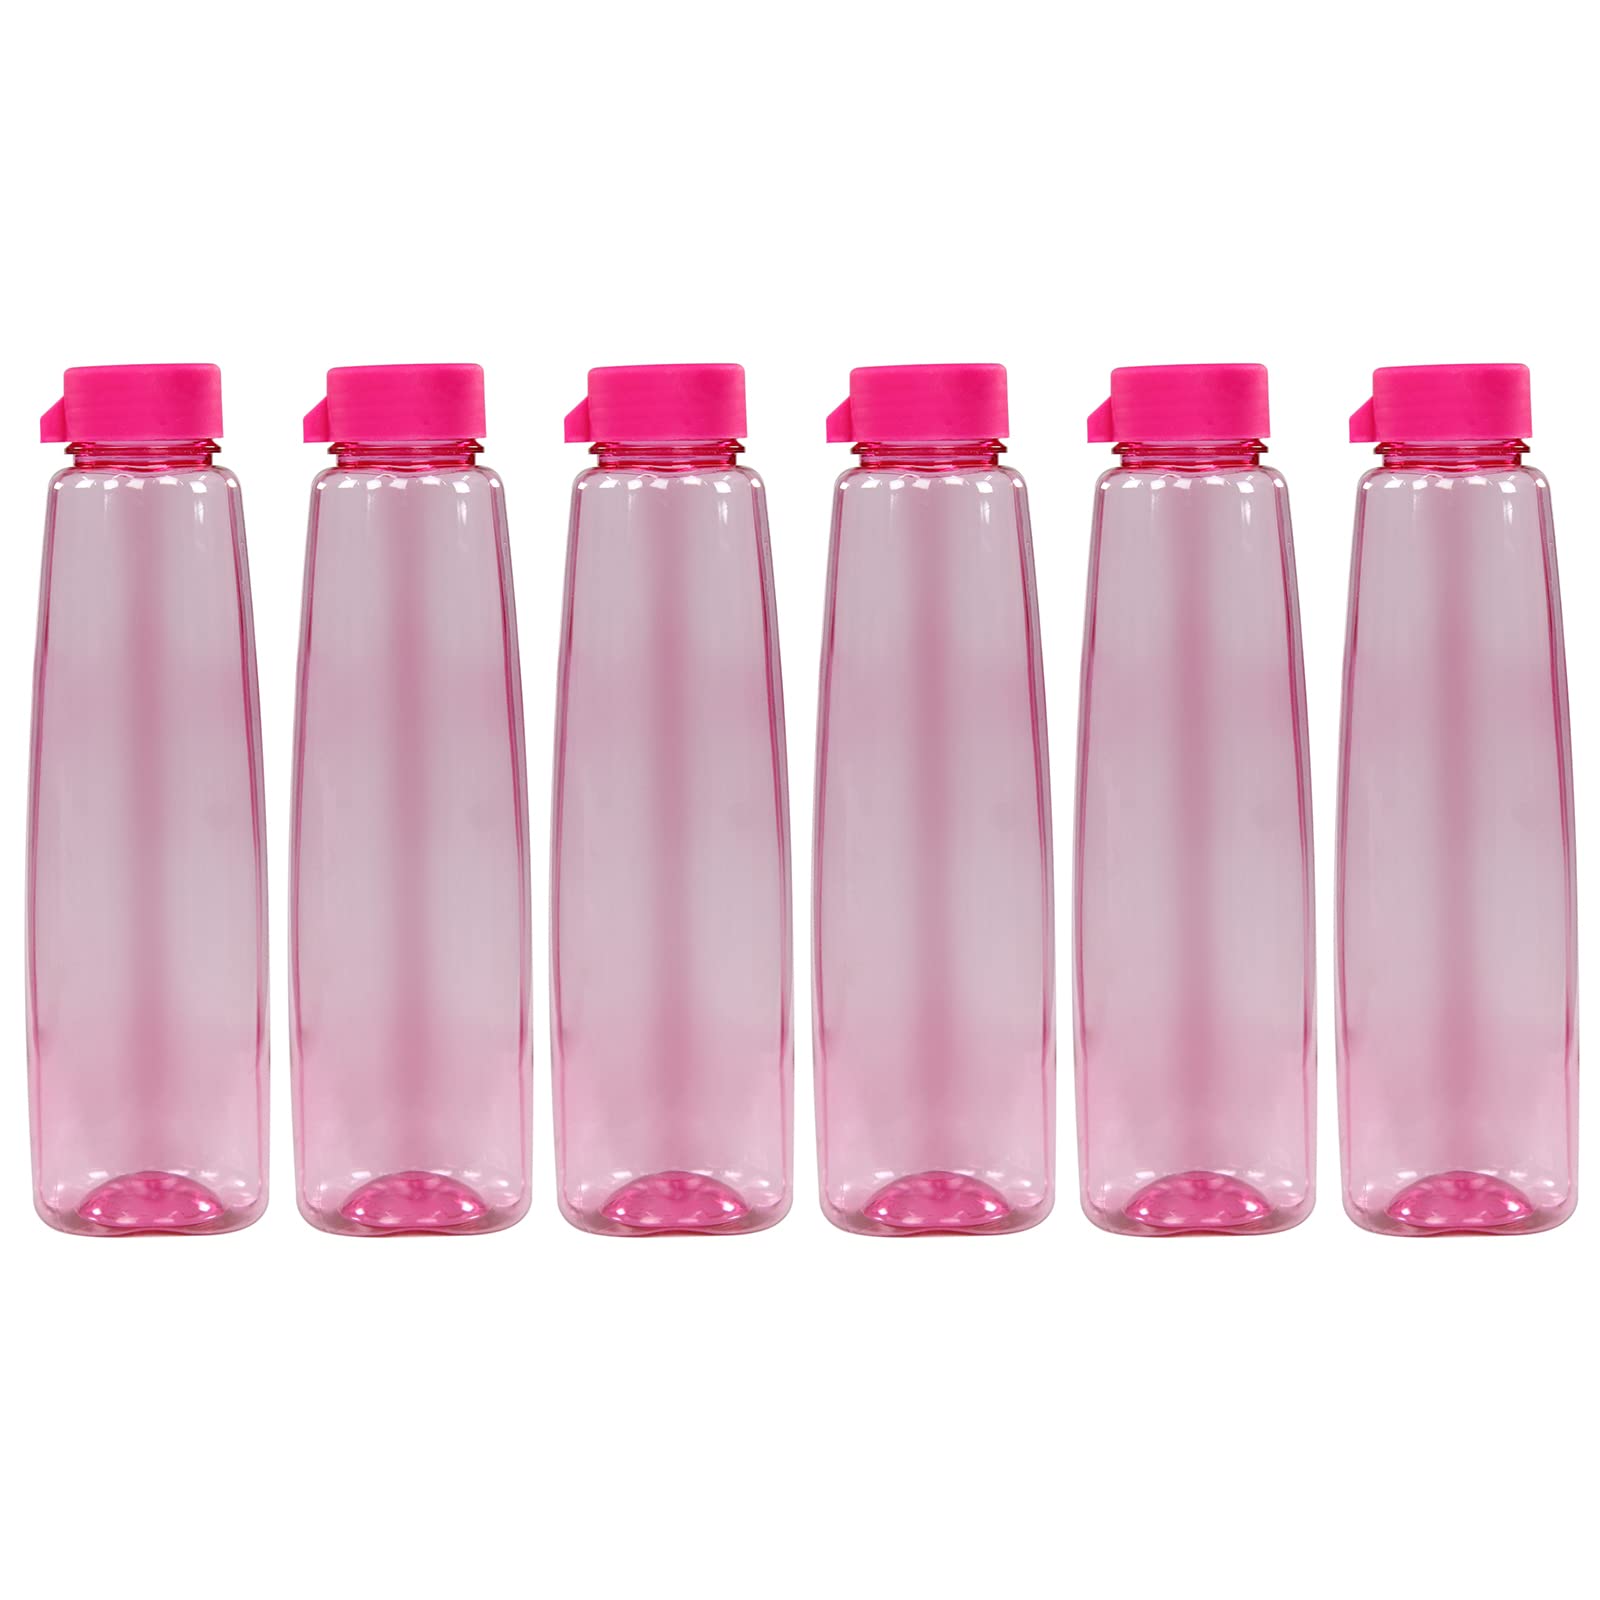 PEARLPET Kohinoor BPA-free Plastic Water Bottle Set of 6 Pcs, Each 1000ml, Pink